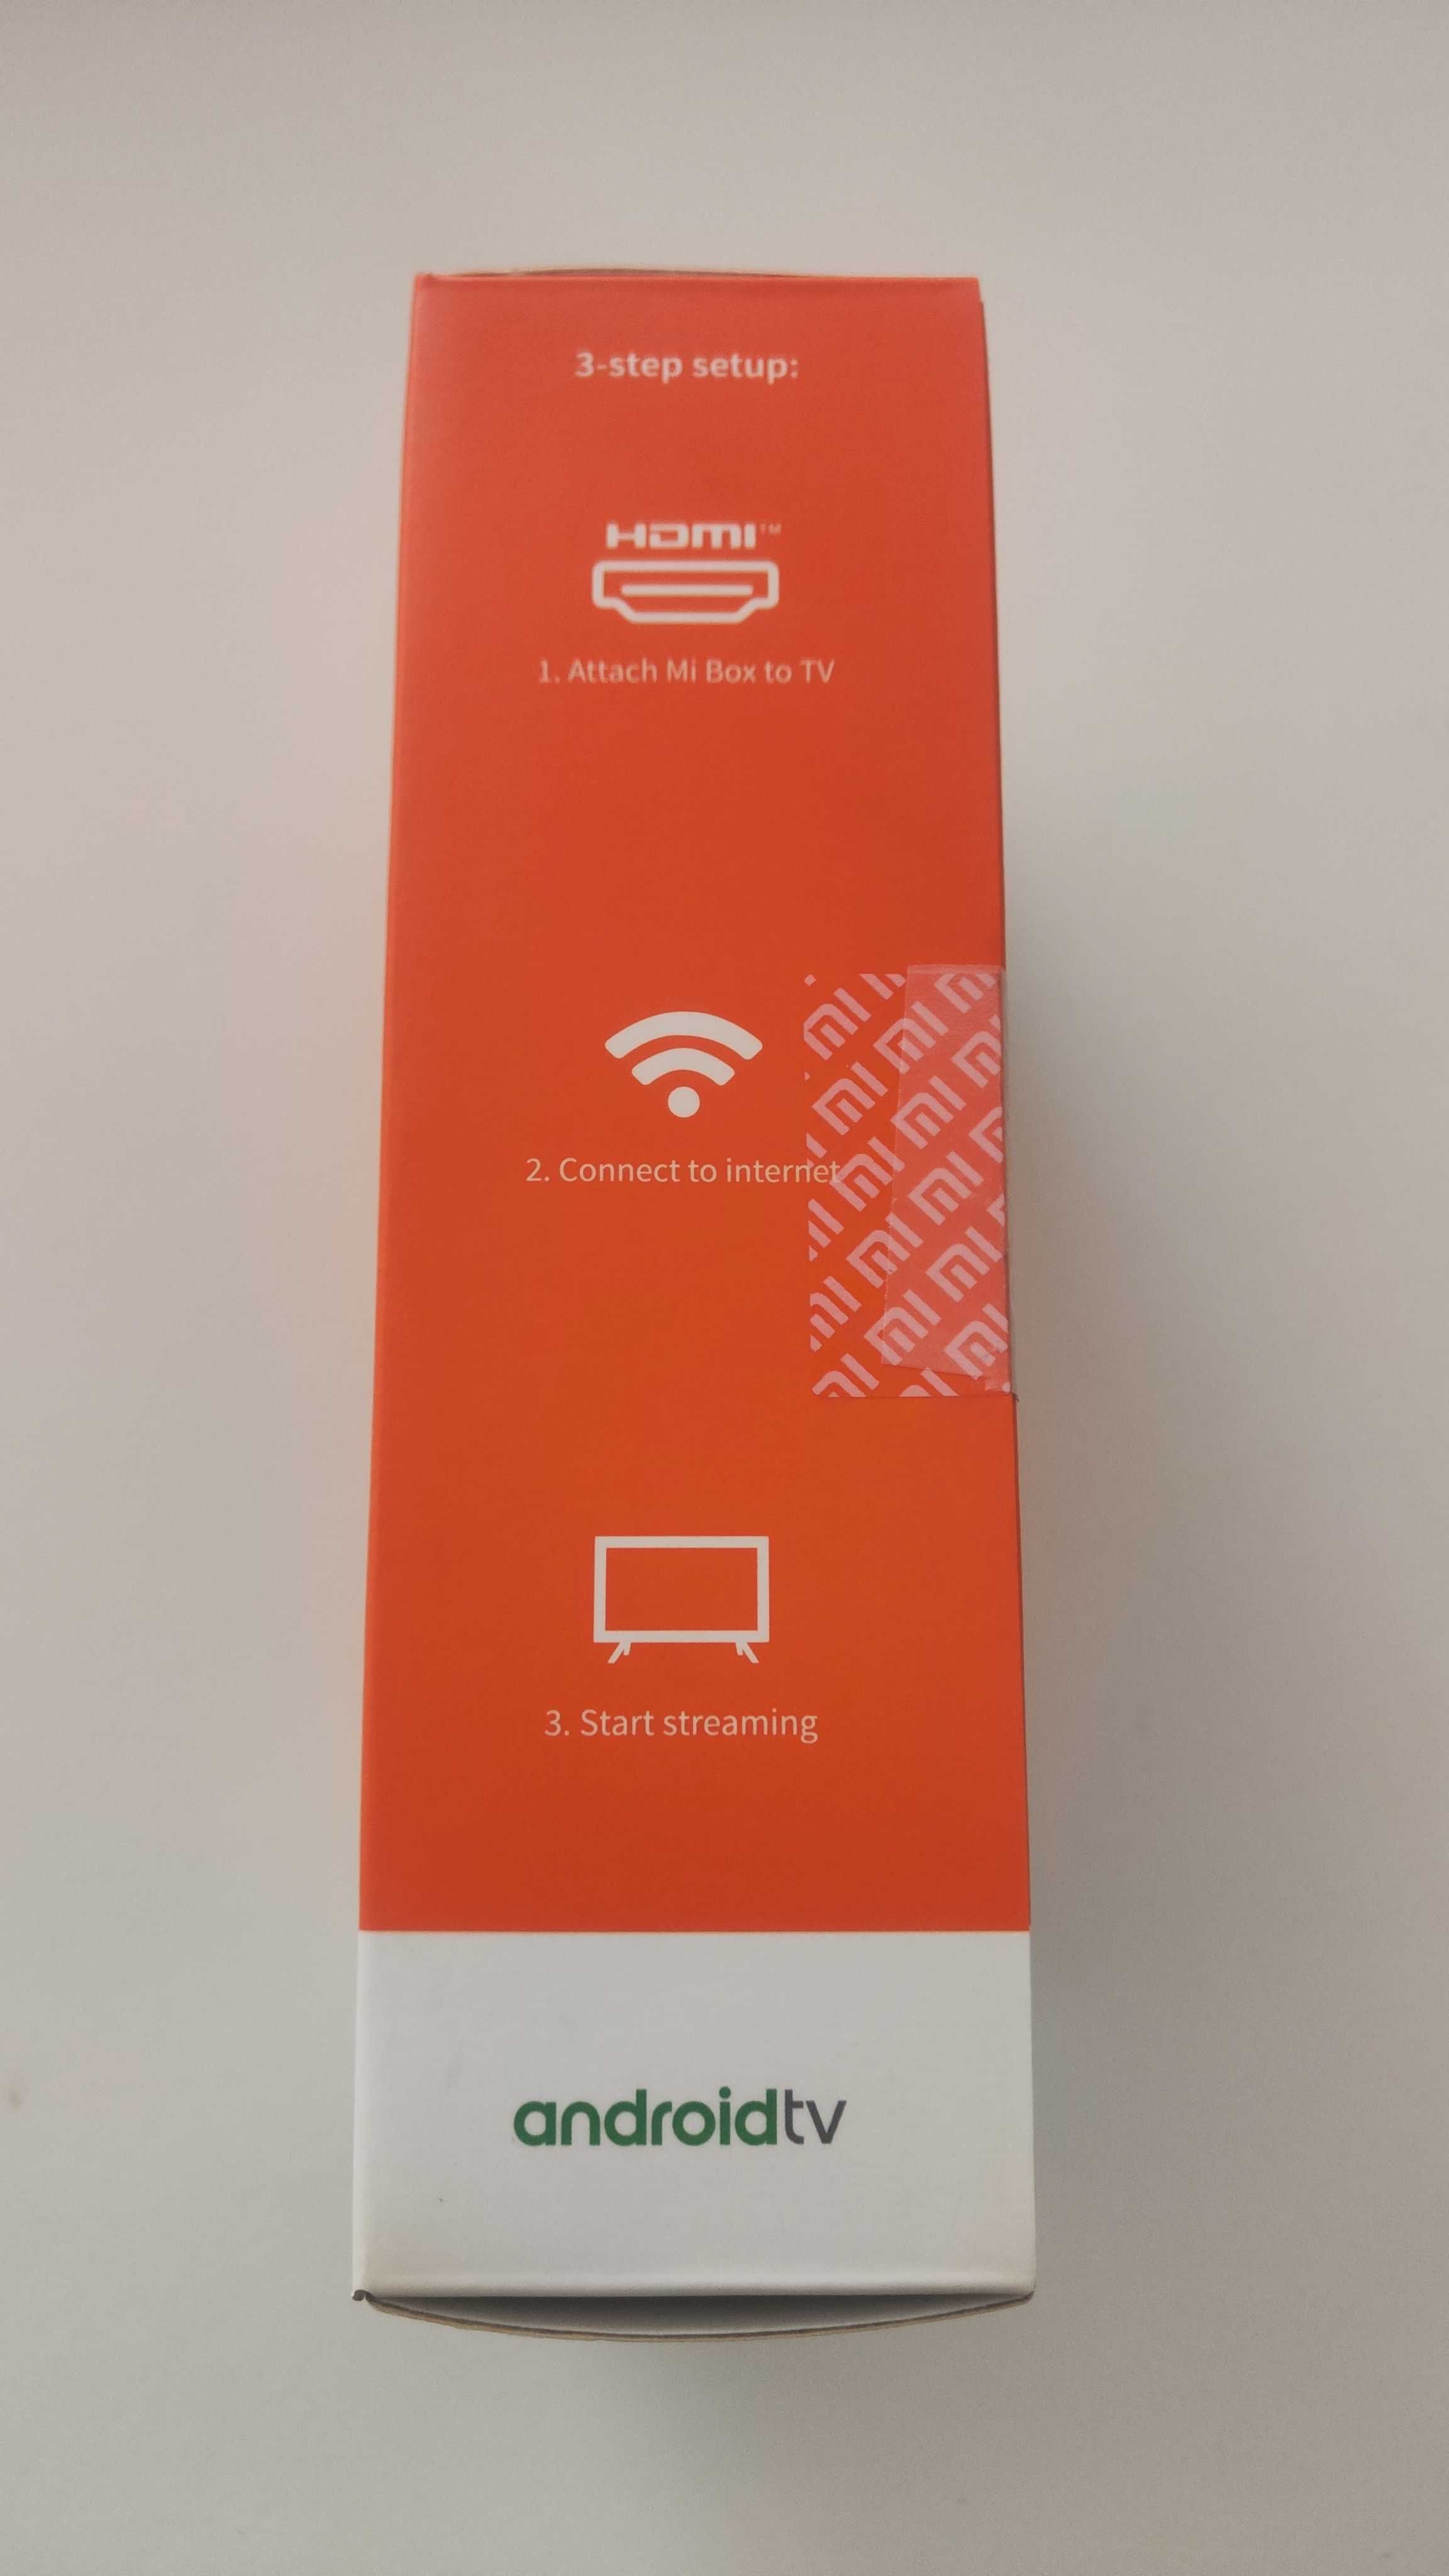 Xiaomi Mi Box S 4K